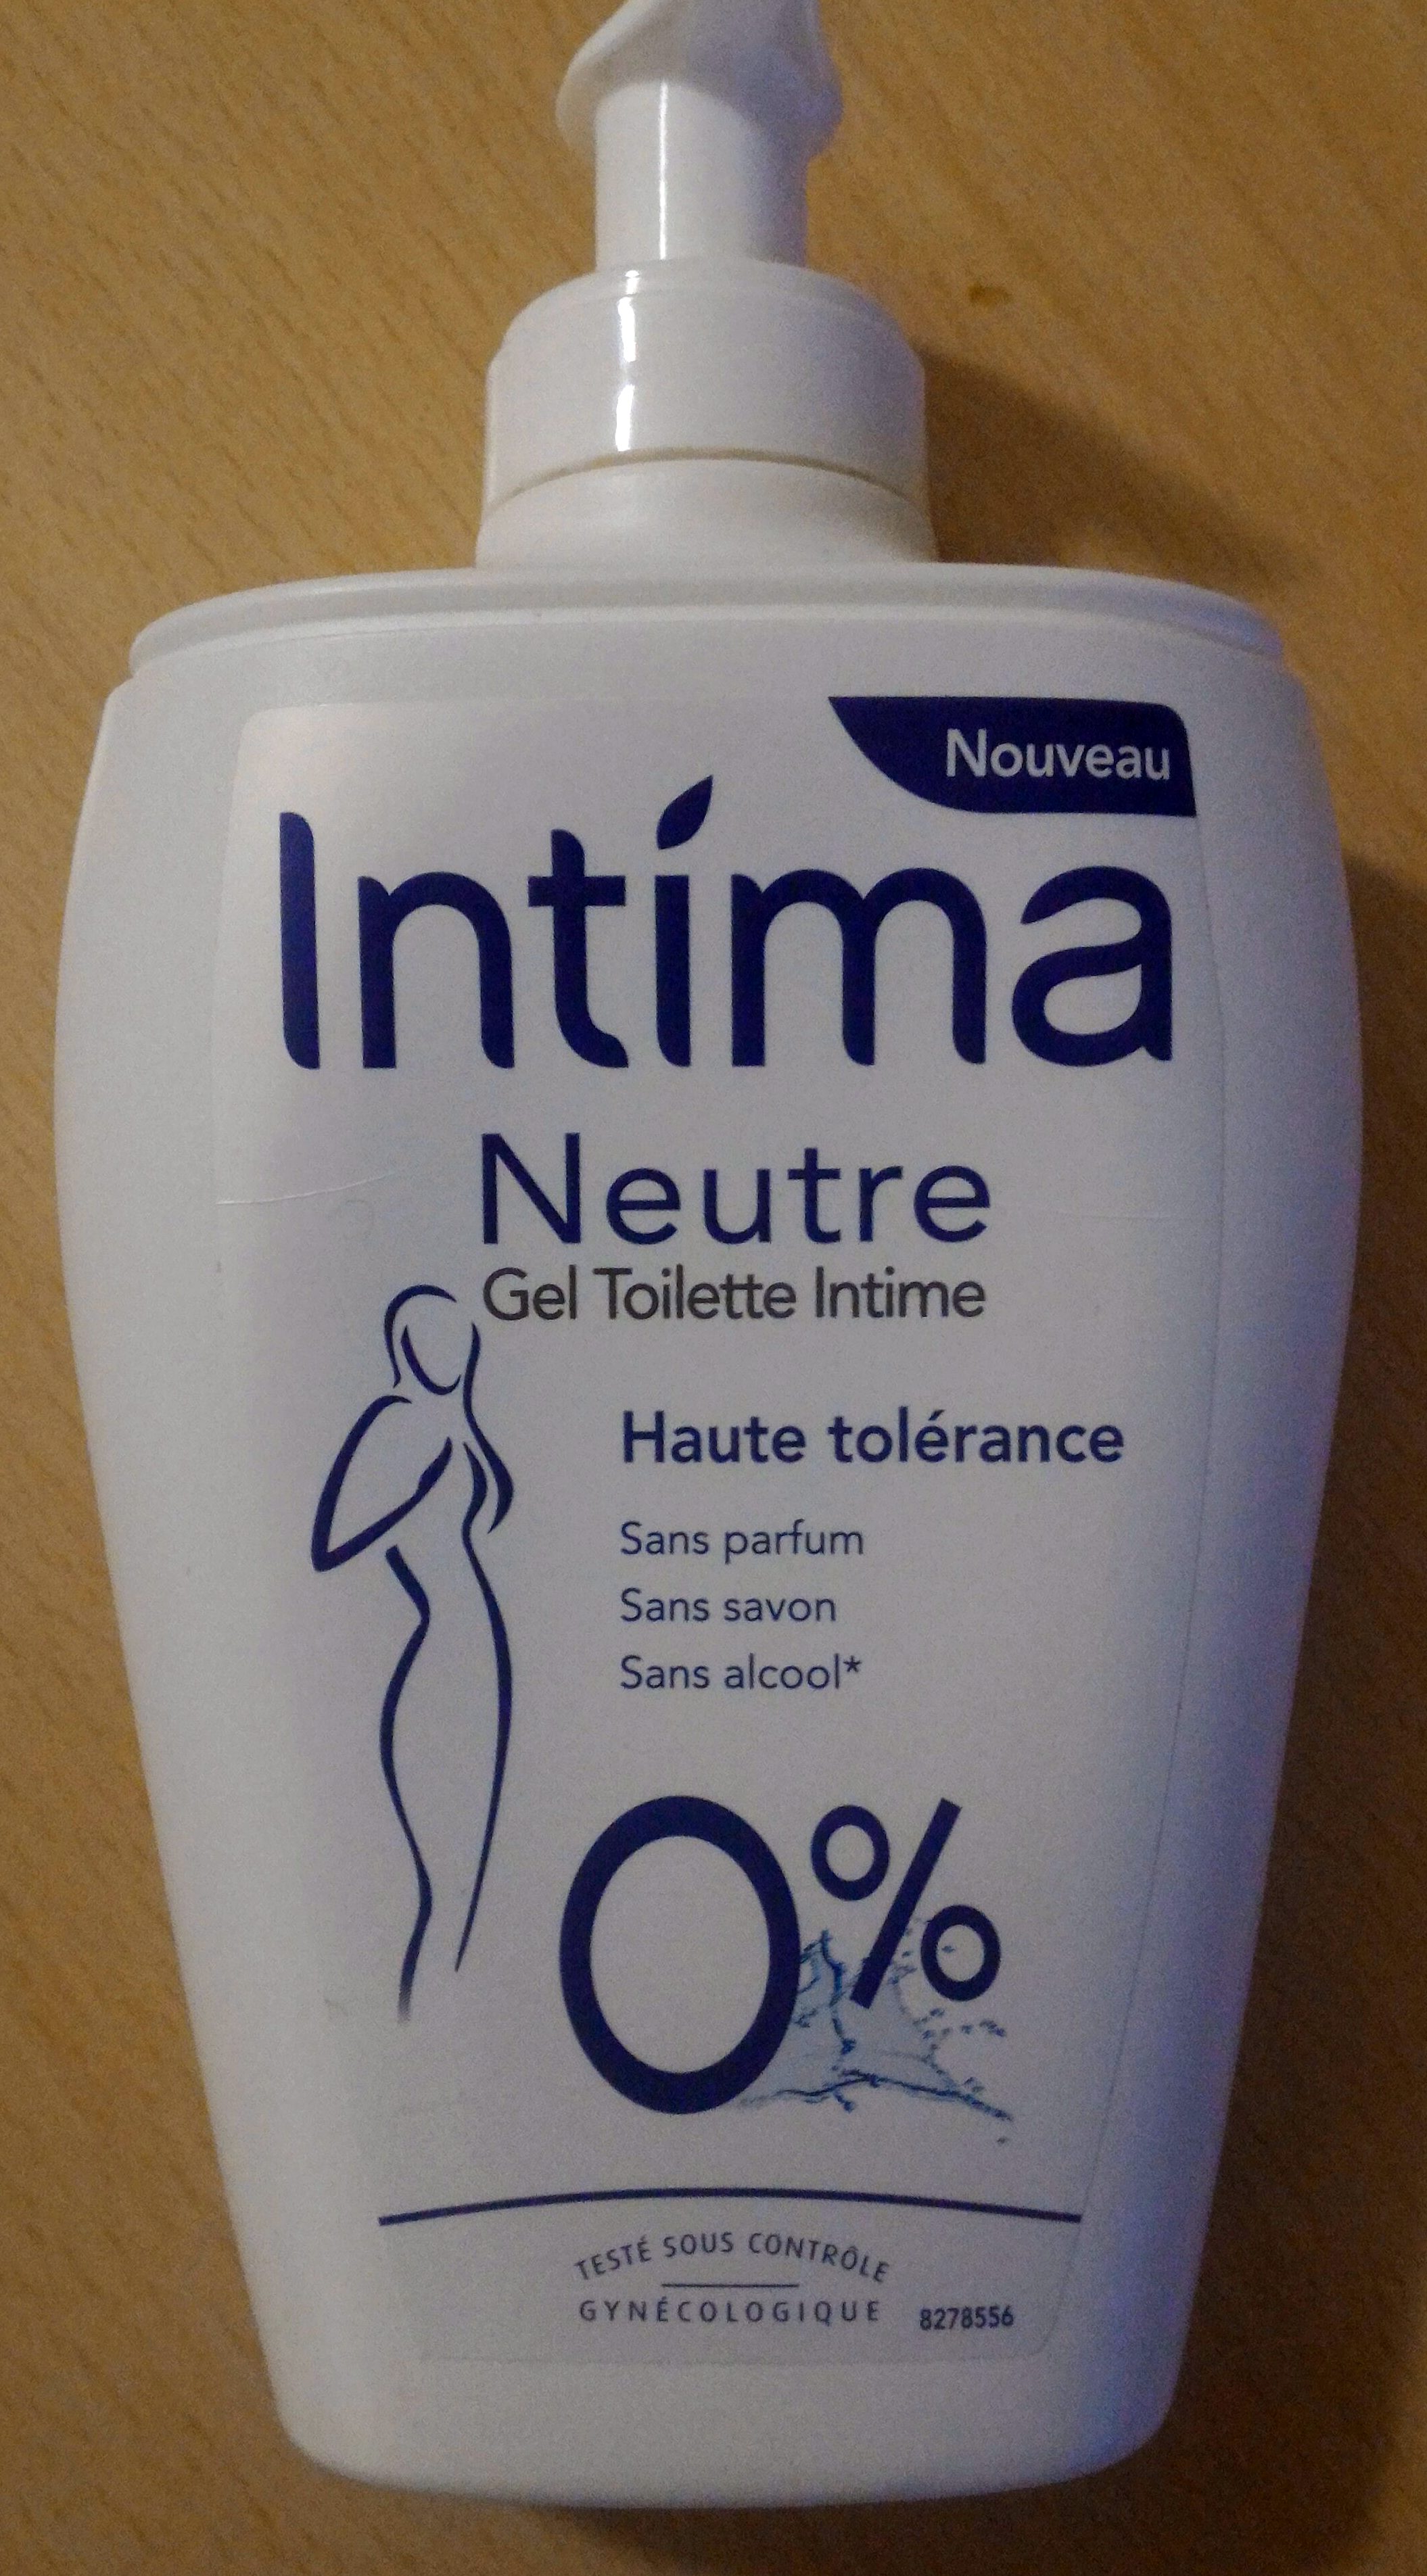 Neutre Gel Toilette Intime Haute tolérance 0% - Produit - fr